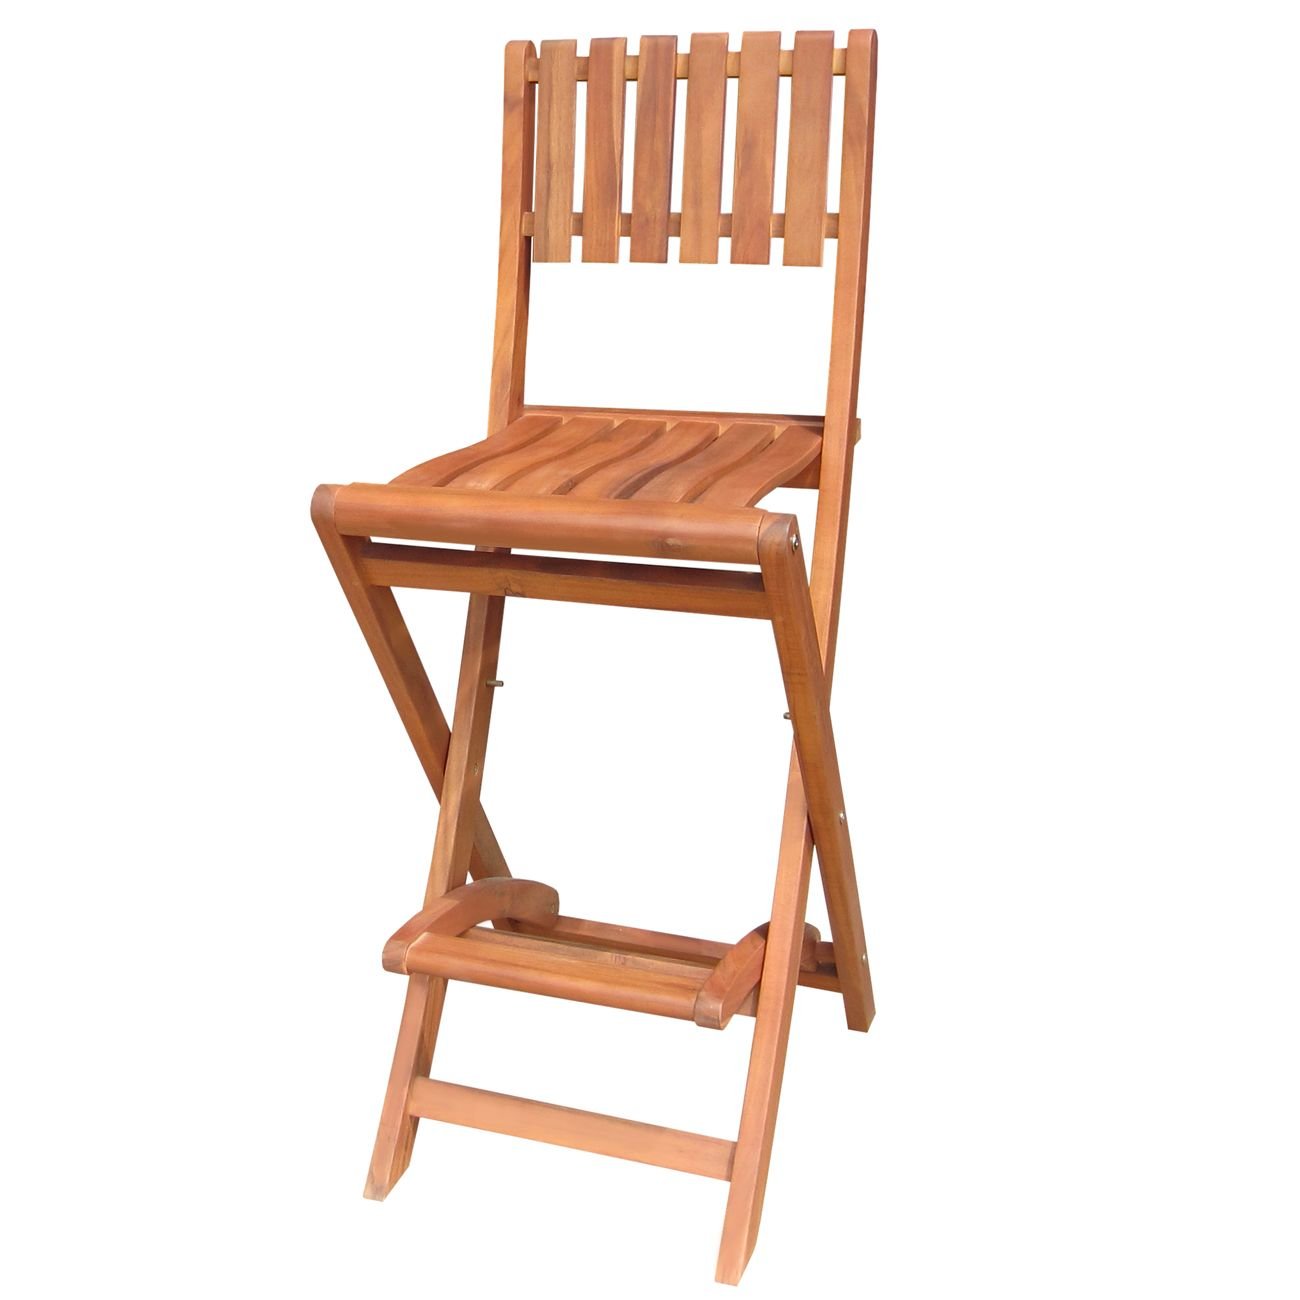 Недорогие складные стулья. Барный стул икеа Франклин. Стул Франклин икеа. Икеа барный стул деревянный складной. Стул складной деревянный икеа.